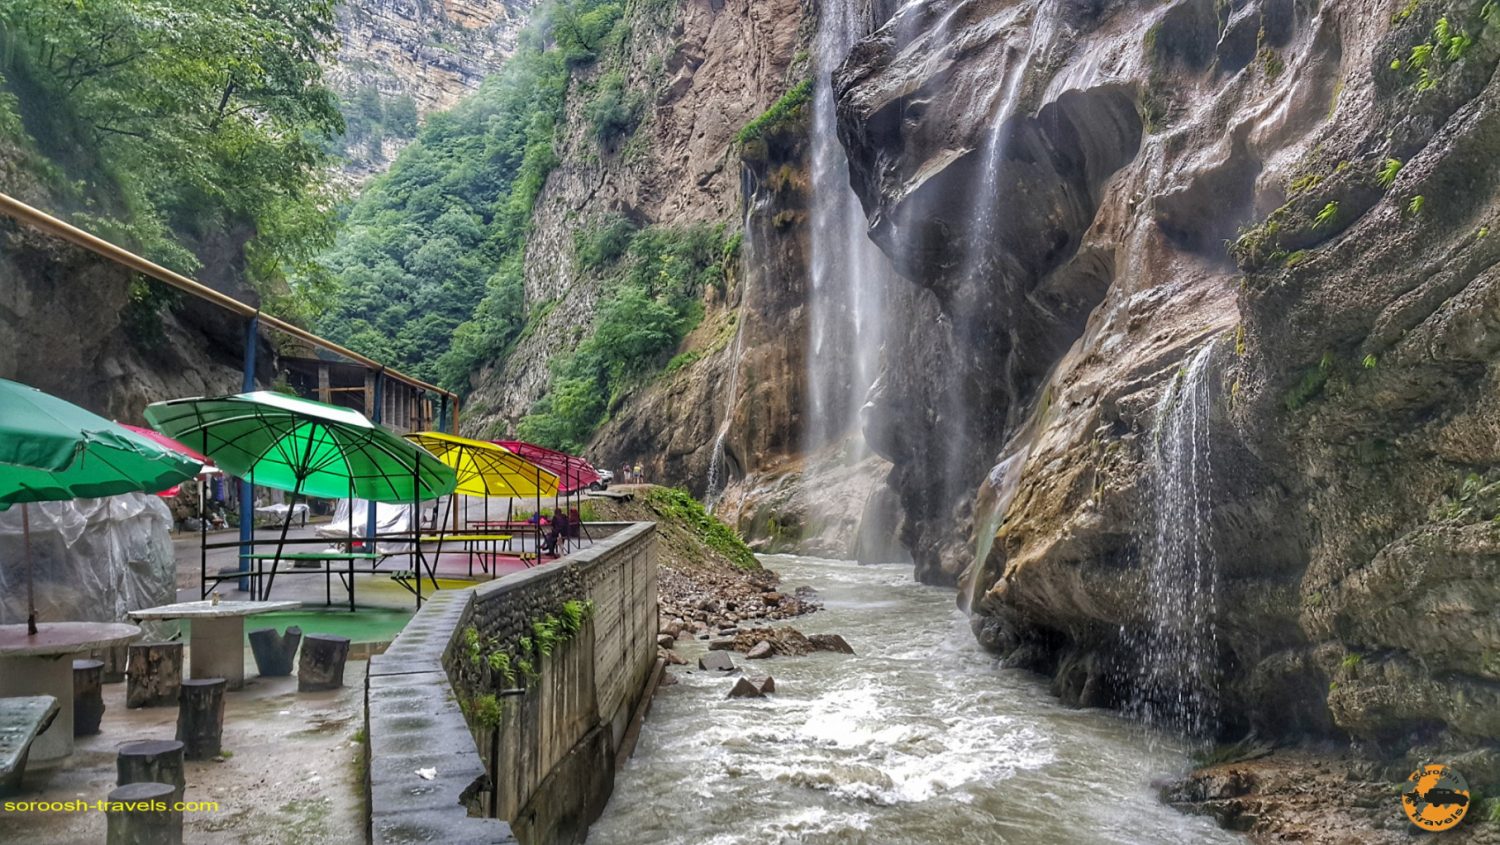 آبشار چگم در روسیه - تابستان 1398 2019